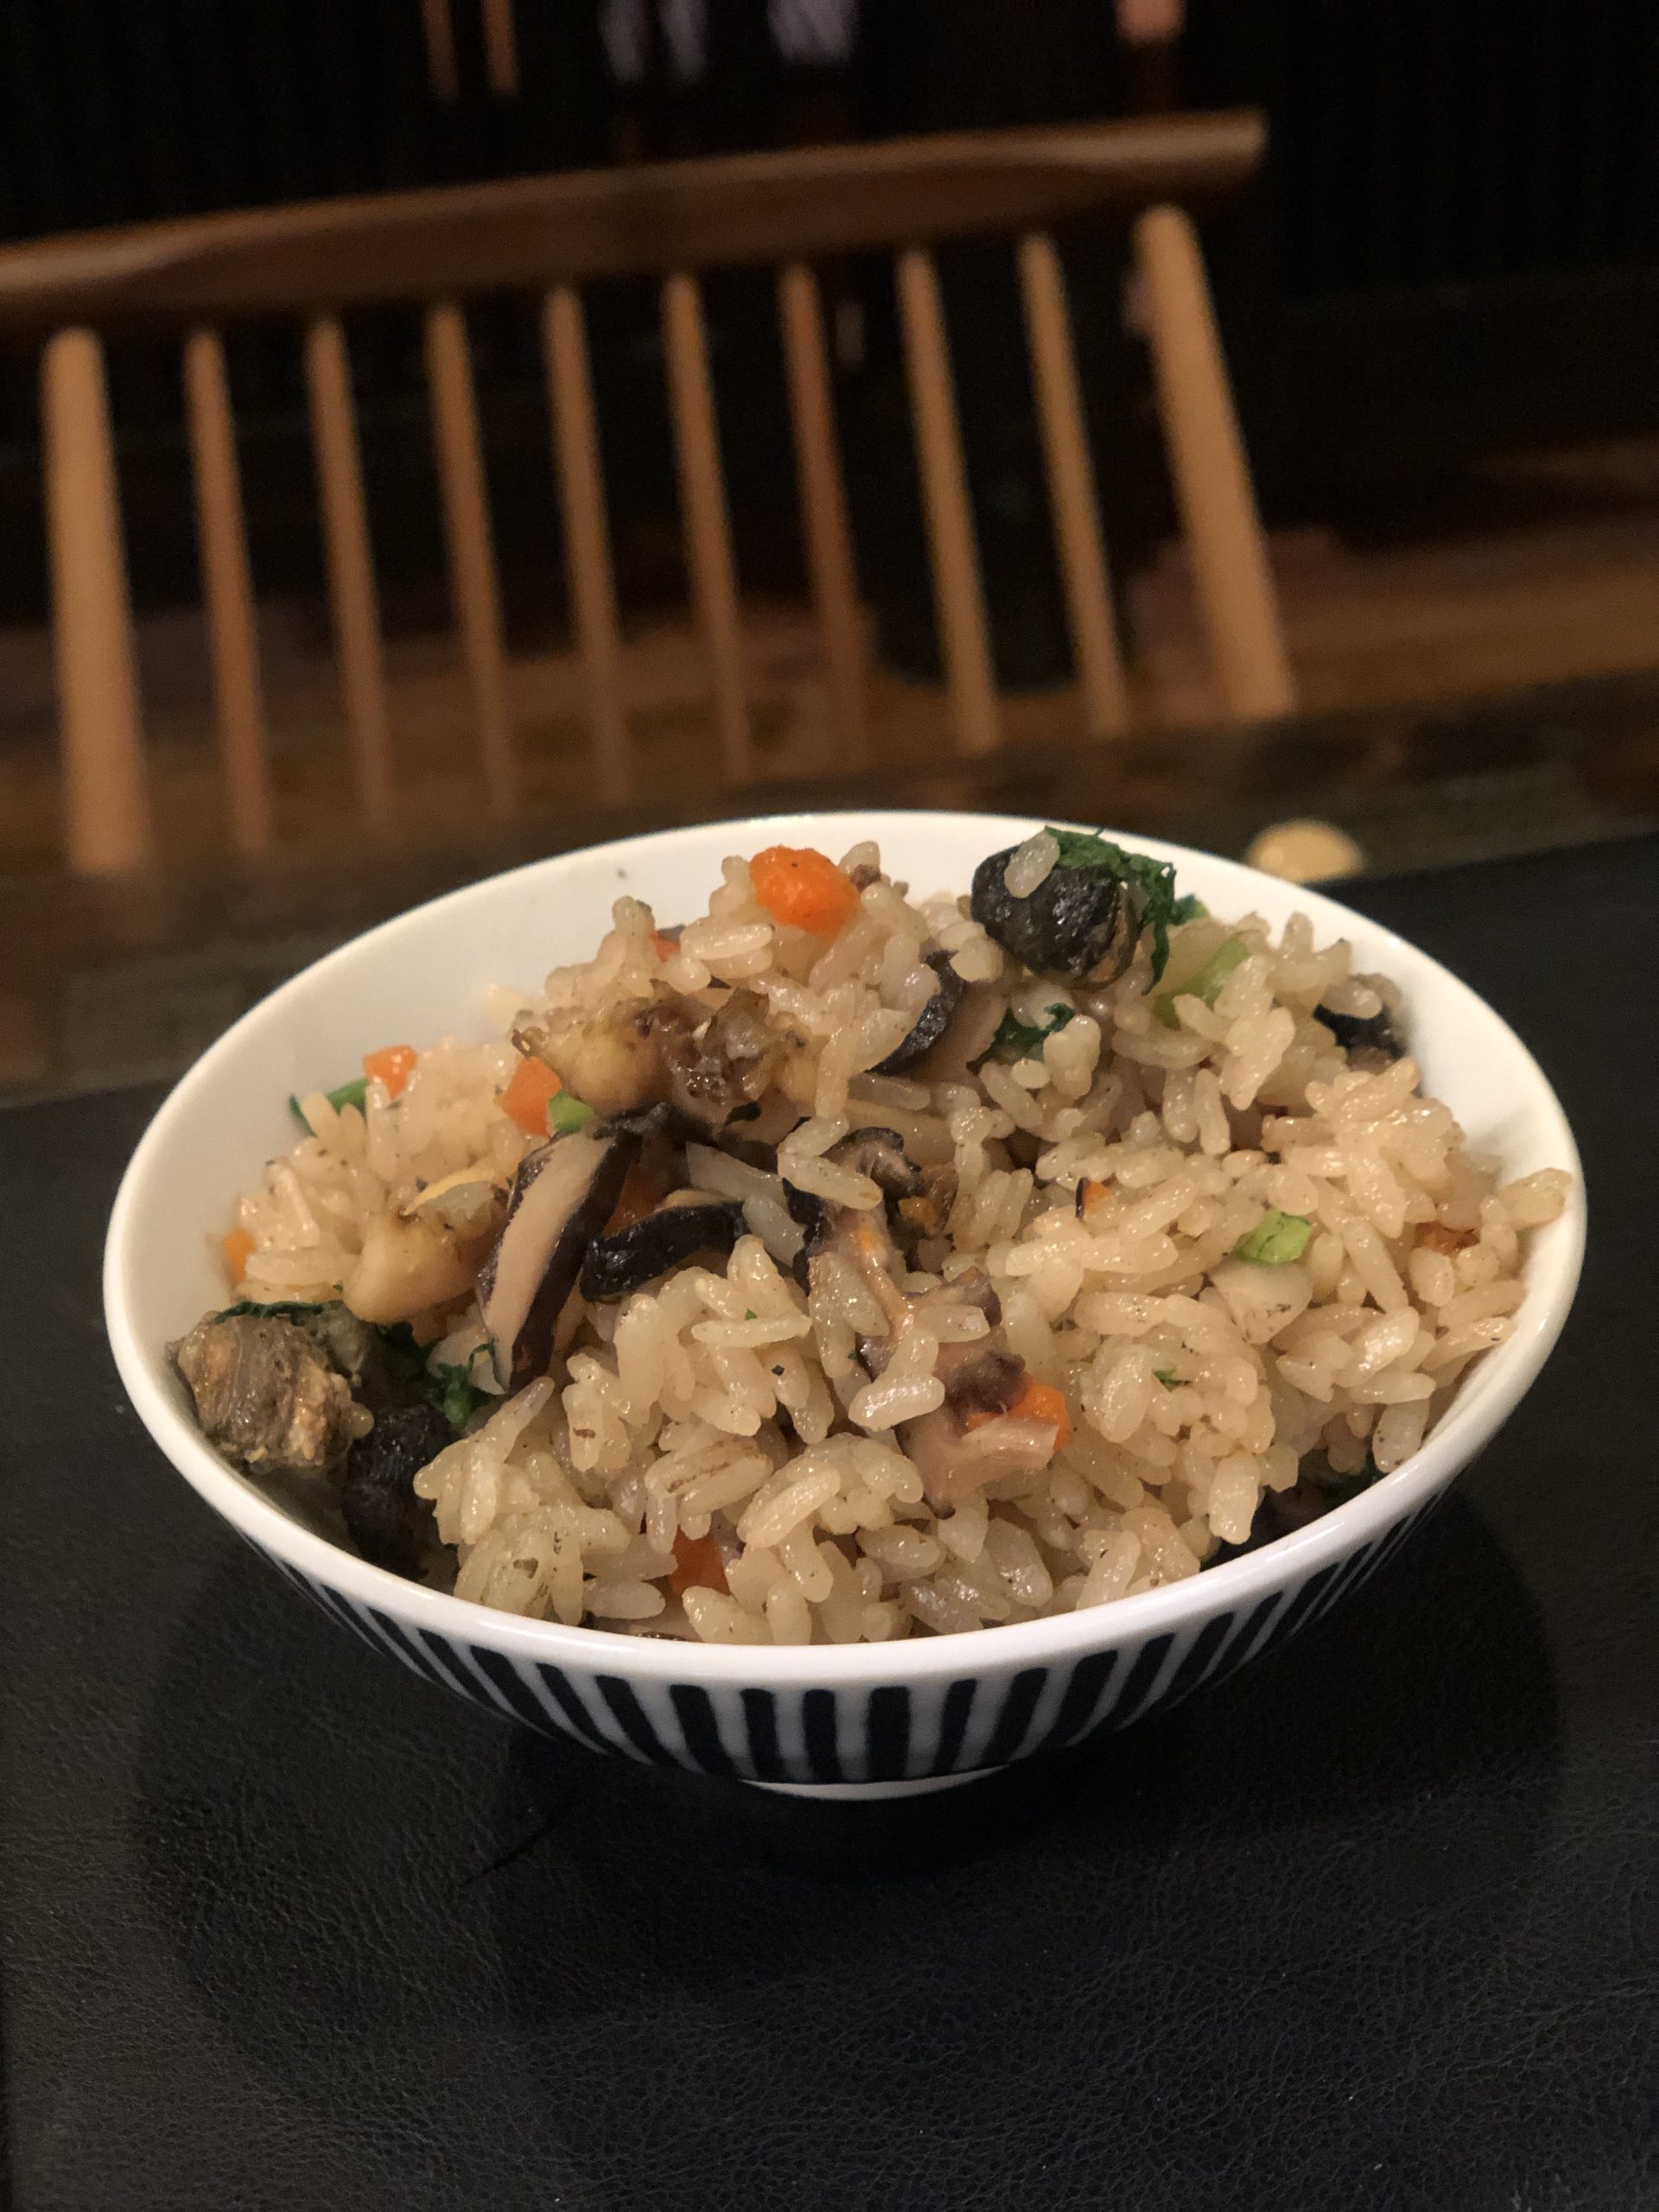 サザエと地物野菜の土鍋飯 自家栽培讃岐米 海の恵み 食の底力 Japan 公式レシピサイト